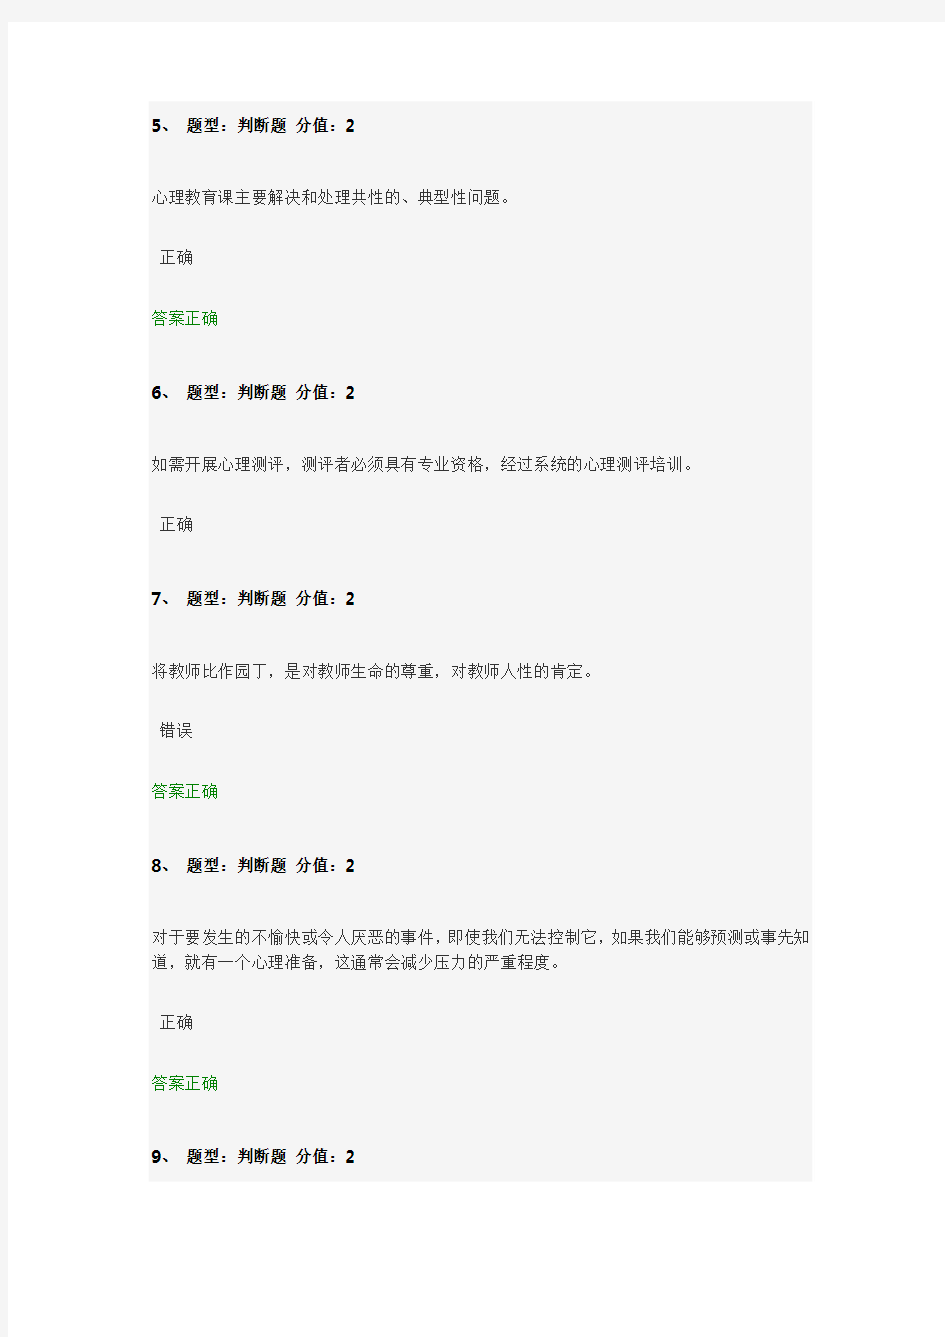 (比较全)2014江苏省中小学教师心理健康知识网络竞赛 判断题答案